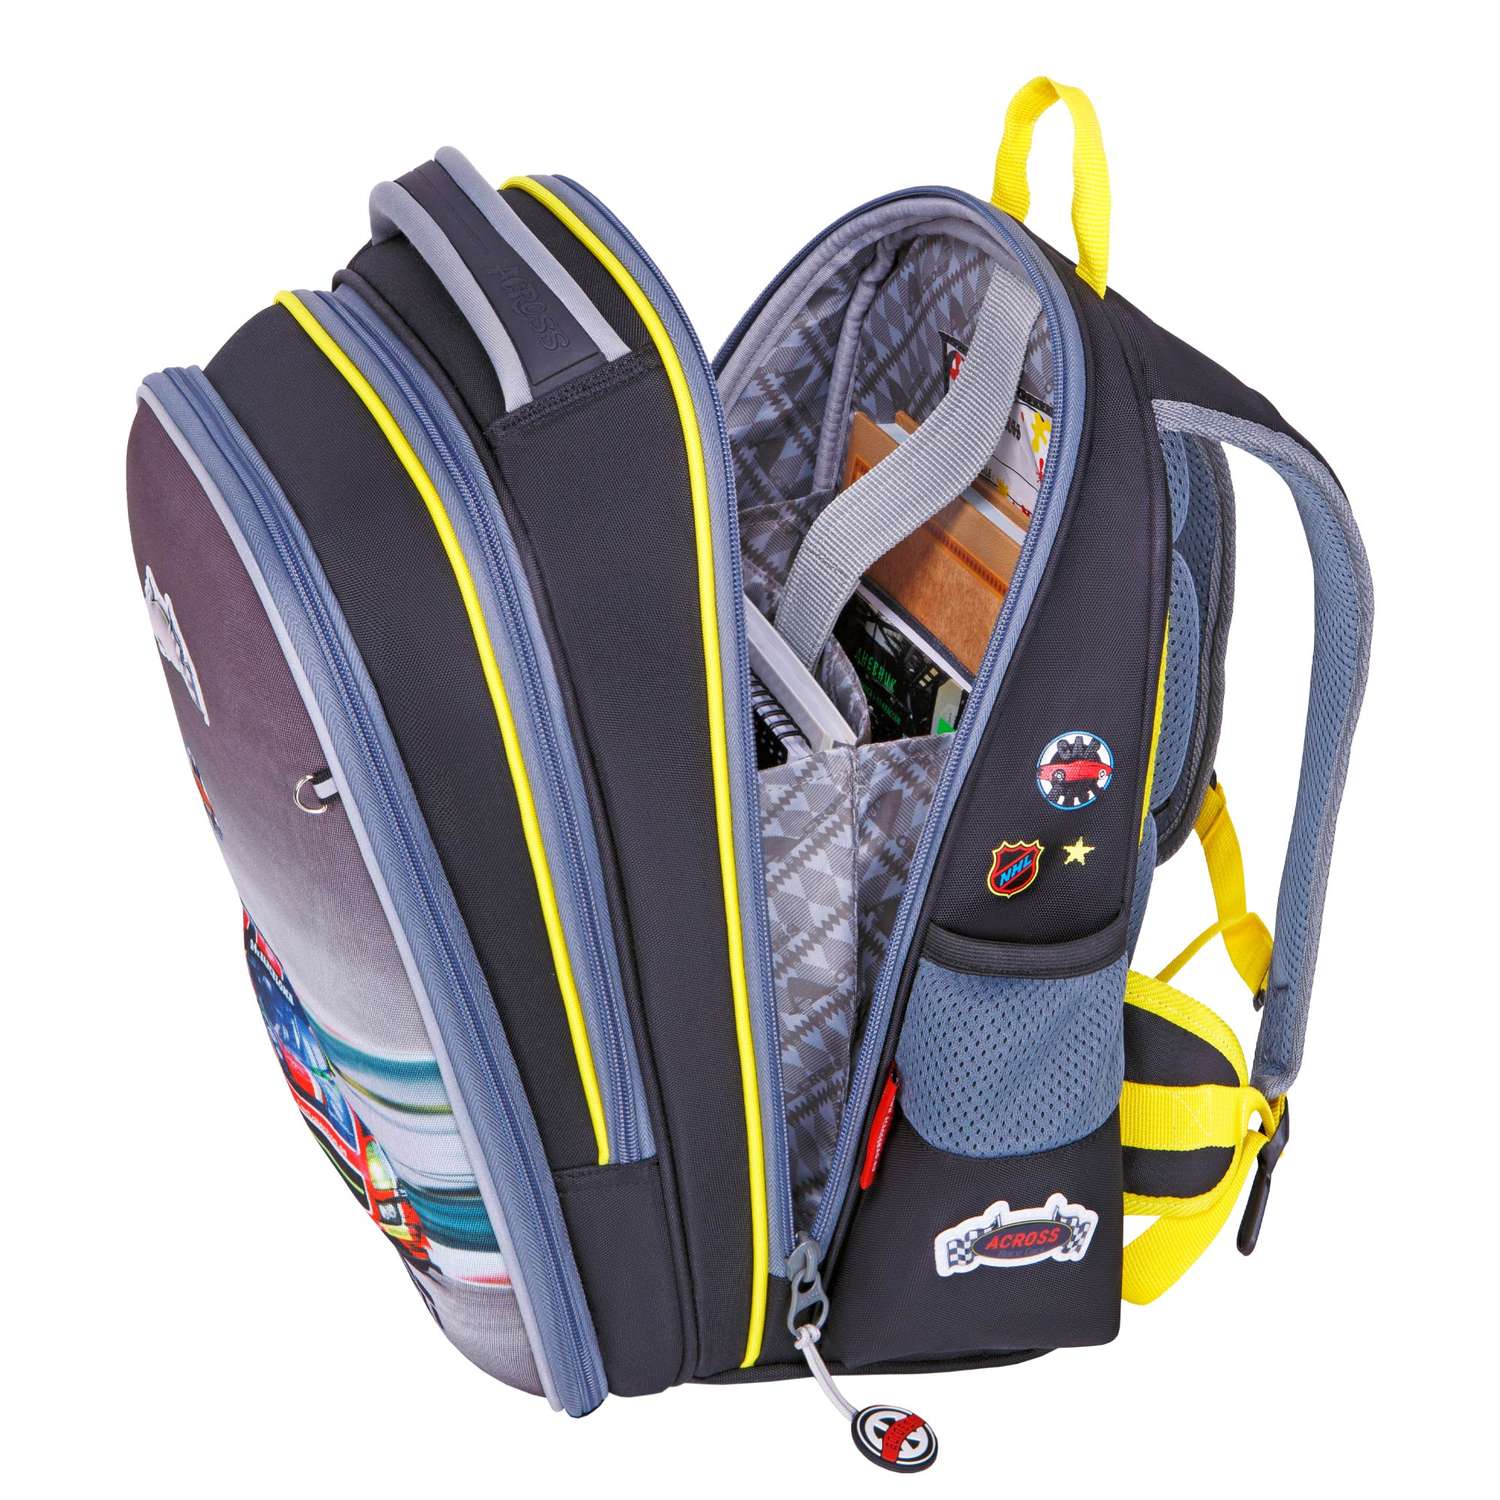 Рюкзак школьный ACROSS с наполнением: мешочек для обуви и брелок - фото 2